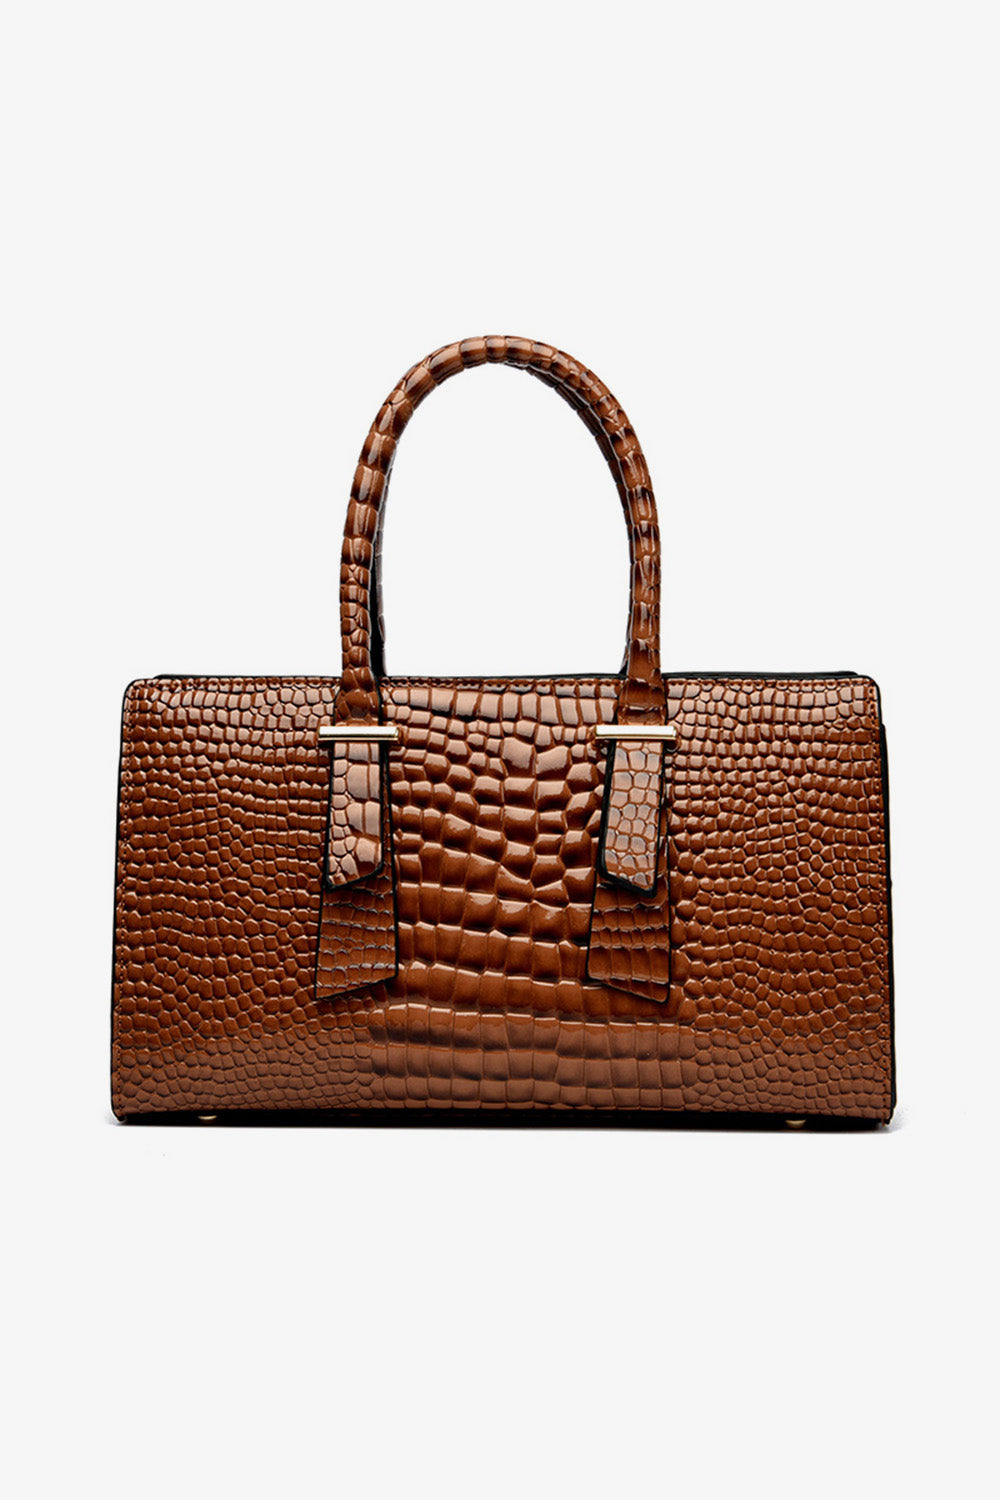 Textured PU Leather Handbag - bertofonsi